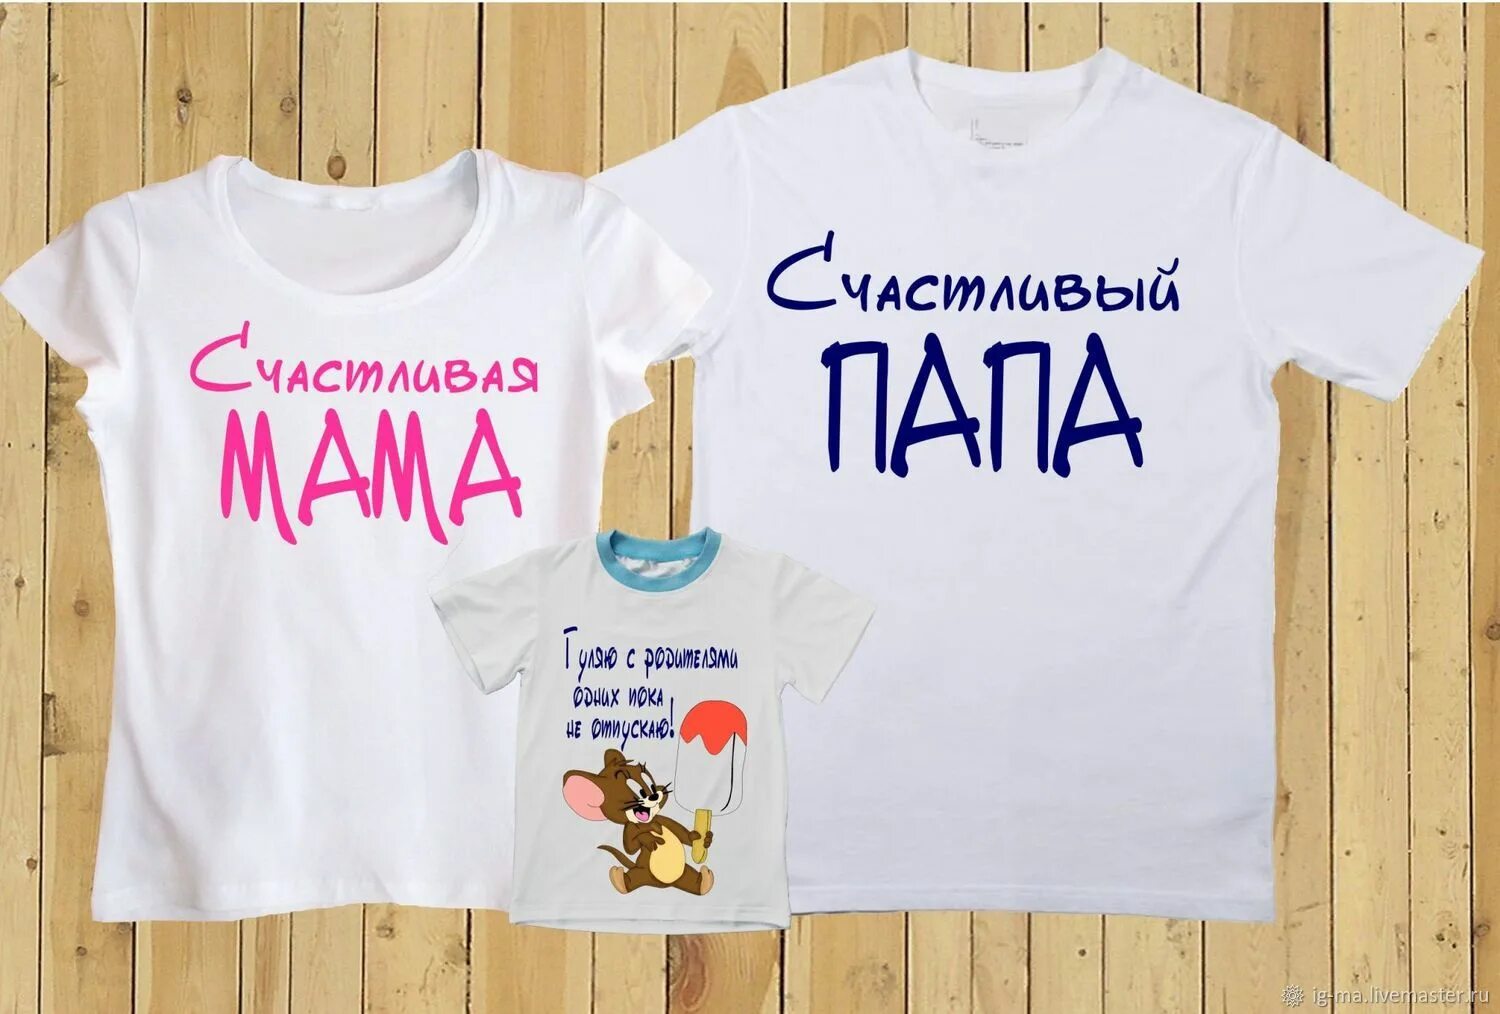 Надписи мама папа. Семейные футболки. Надписи на футболках для семьи. Парные футболки для семьи. Семейные футболки с надписями.